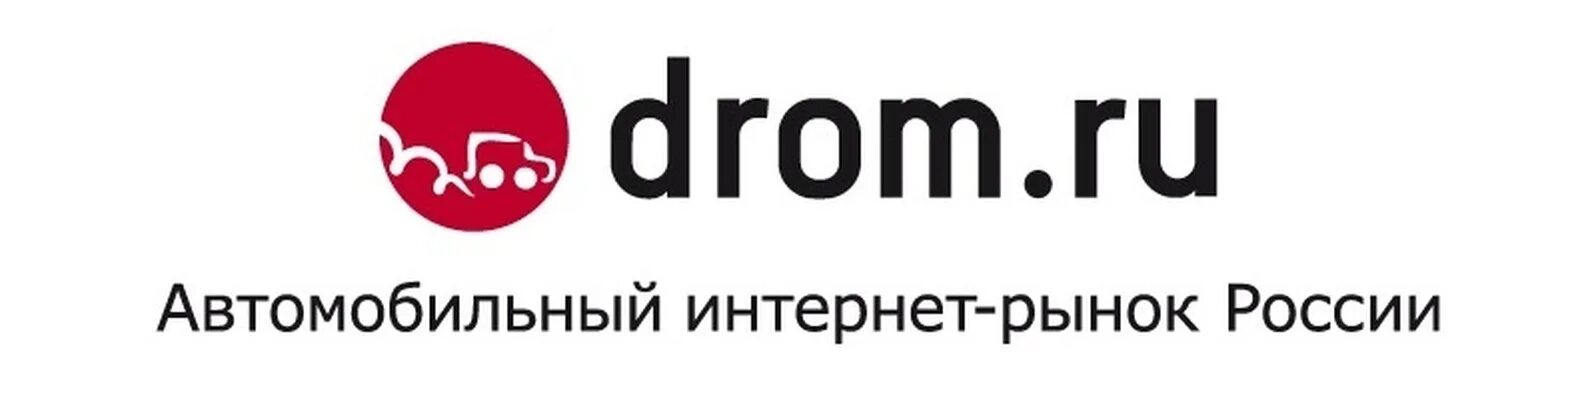 Дром ру. Drom.ru логотип. Дром картинки. Логотип дром логотип. Дром ру т